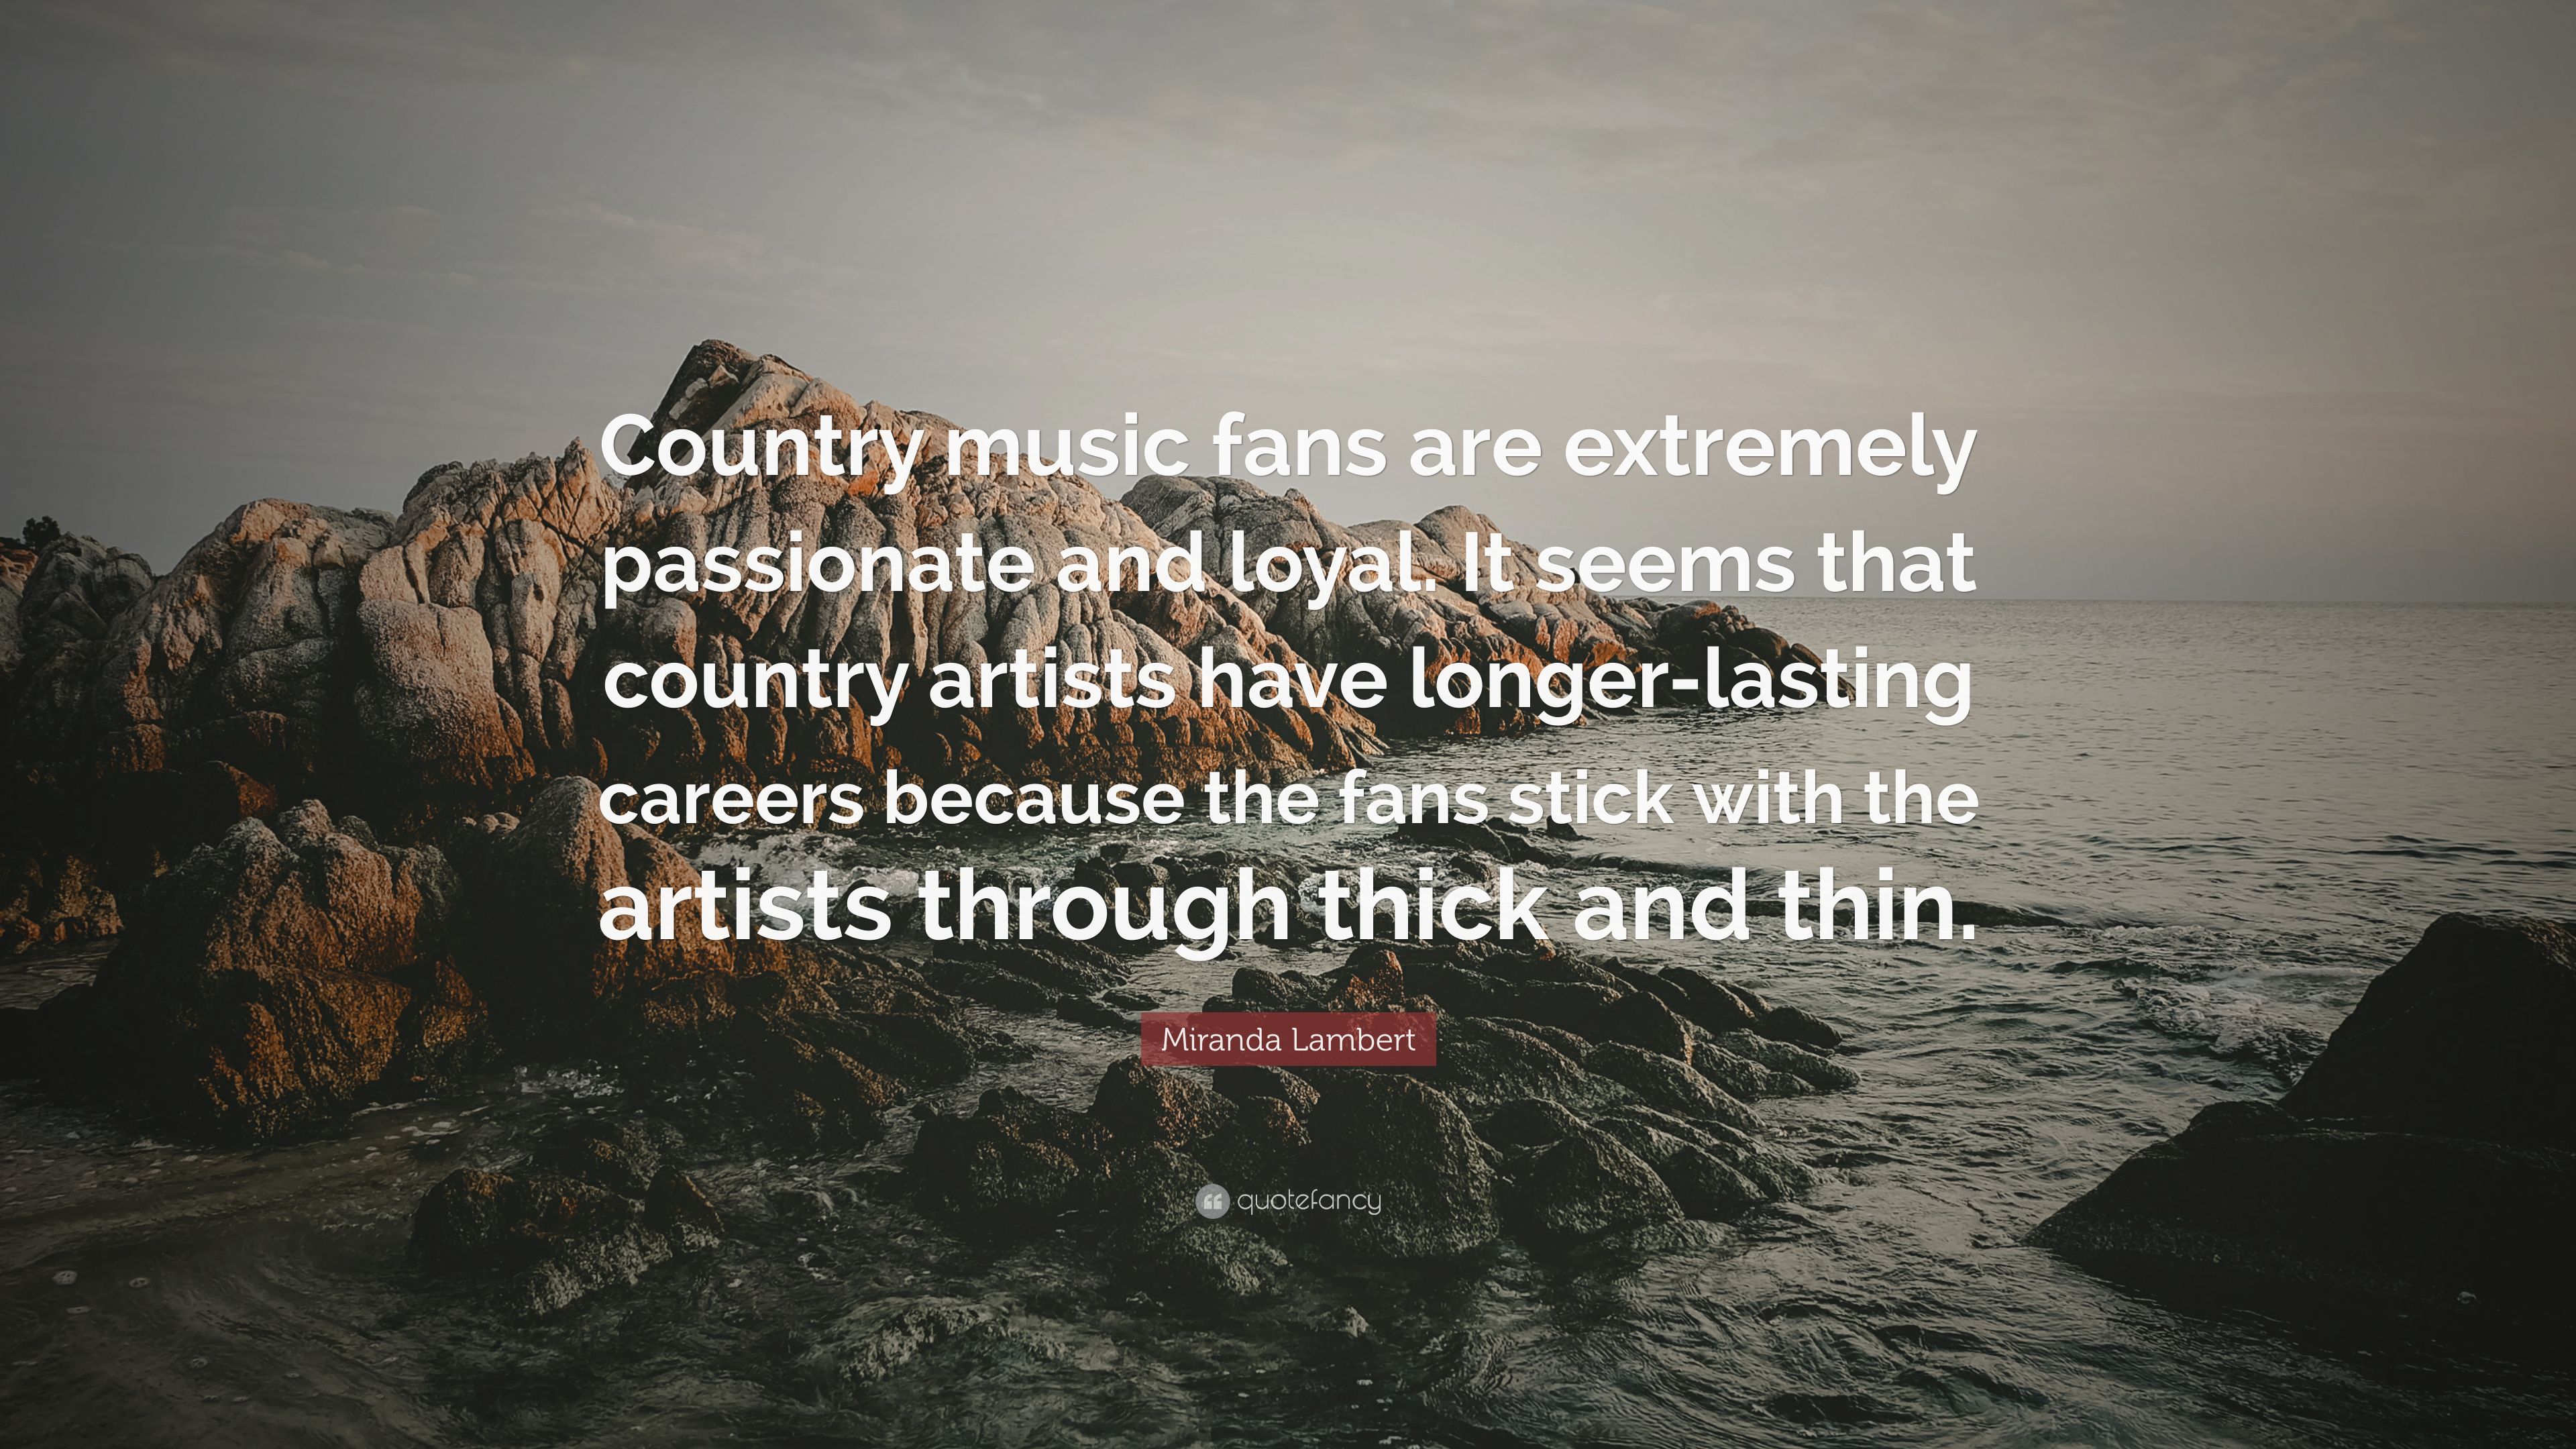 Miranda Lambert Quote: “Country music .quotefancy.com